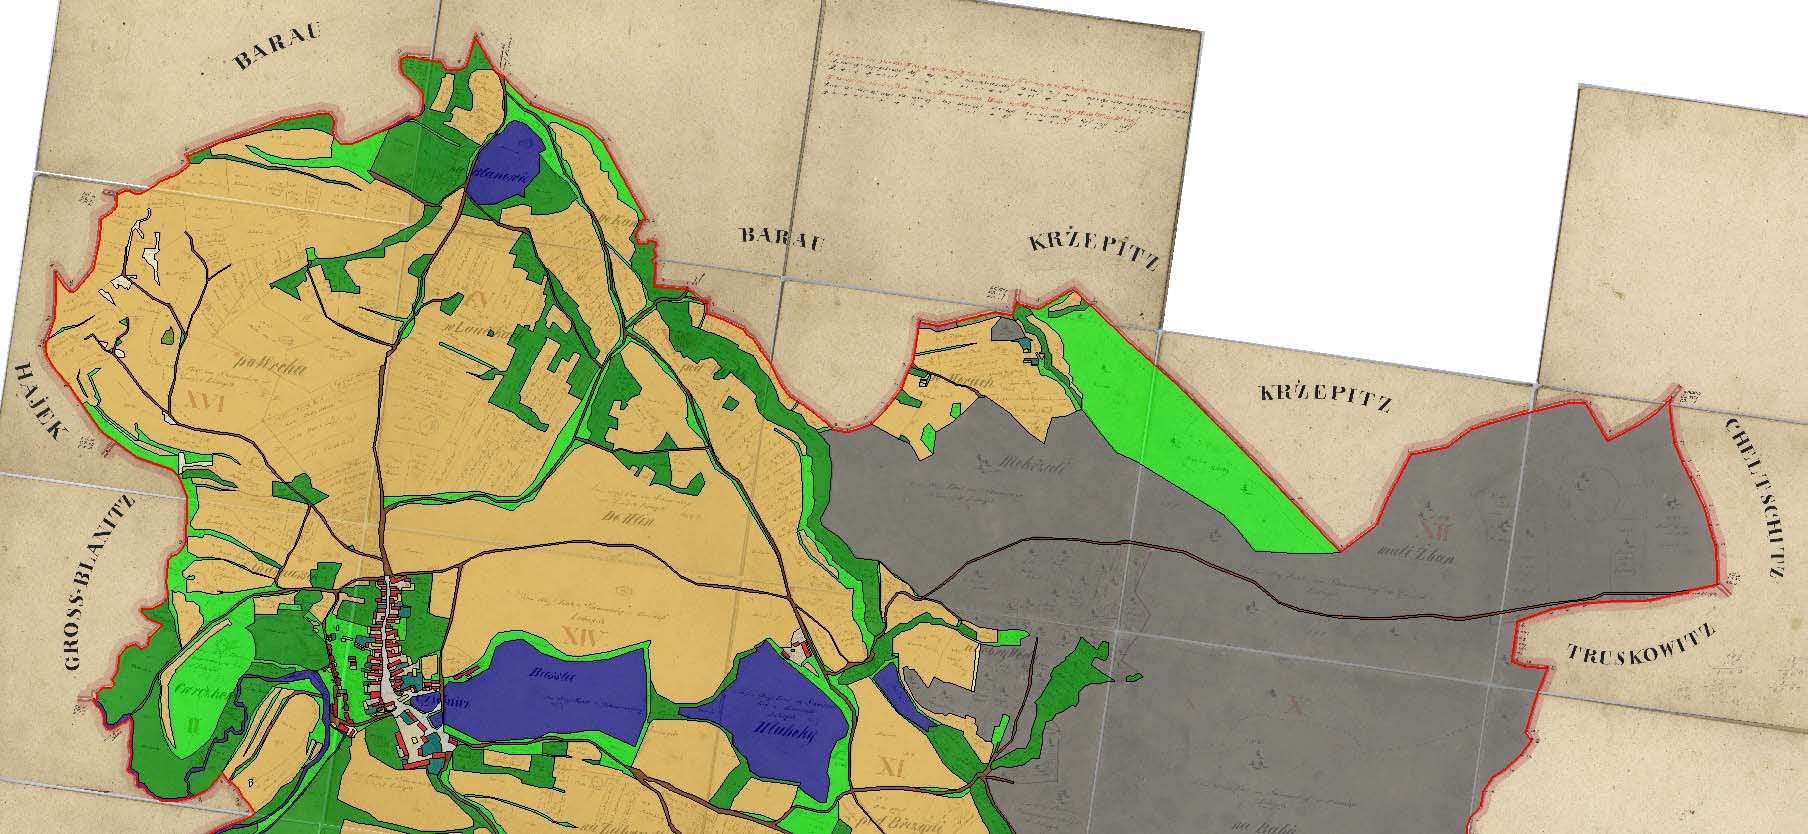 Výsledky Transekt v povodí Zlatého potoka Délka toku Zlatého potoka je 33,6 km, vlastní transekt tvořený 1 km bufferem okolo toku má plochu 61,9 km 2.